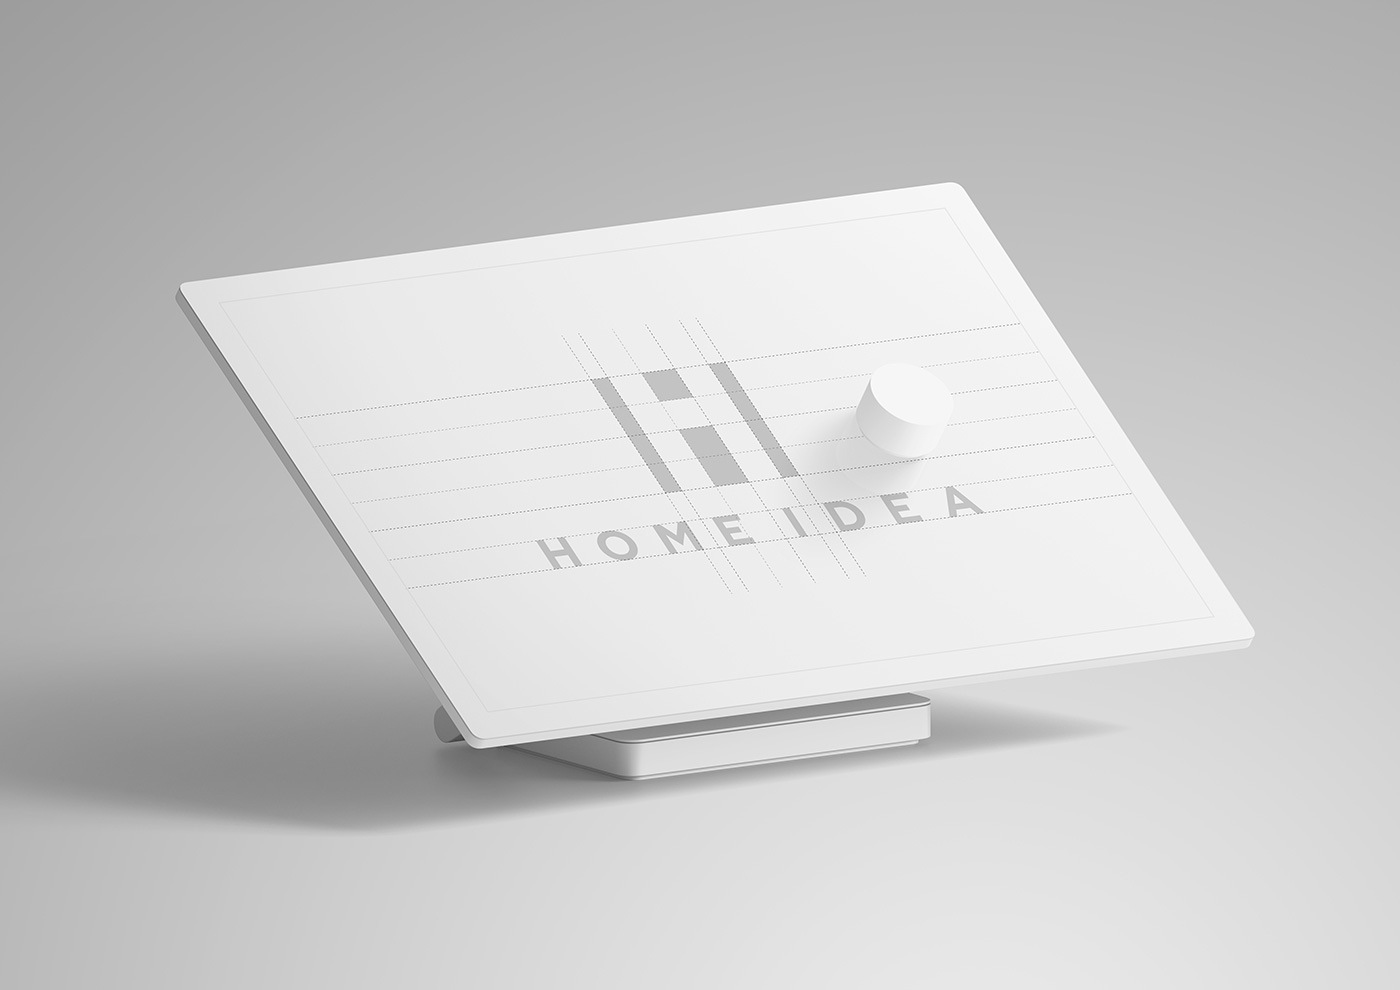 website and logo design HomeIdea